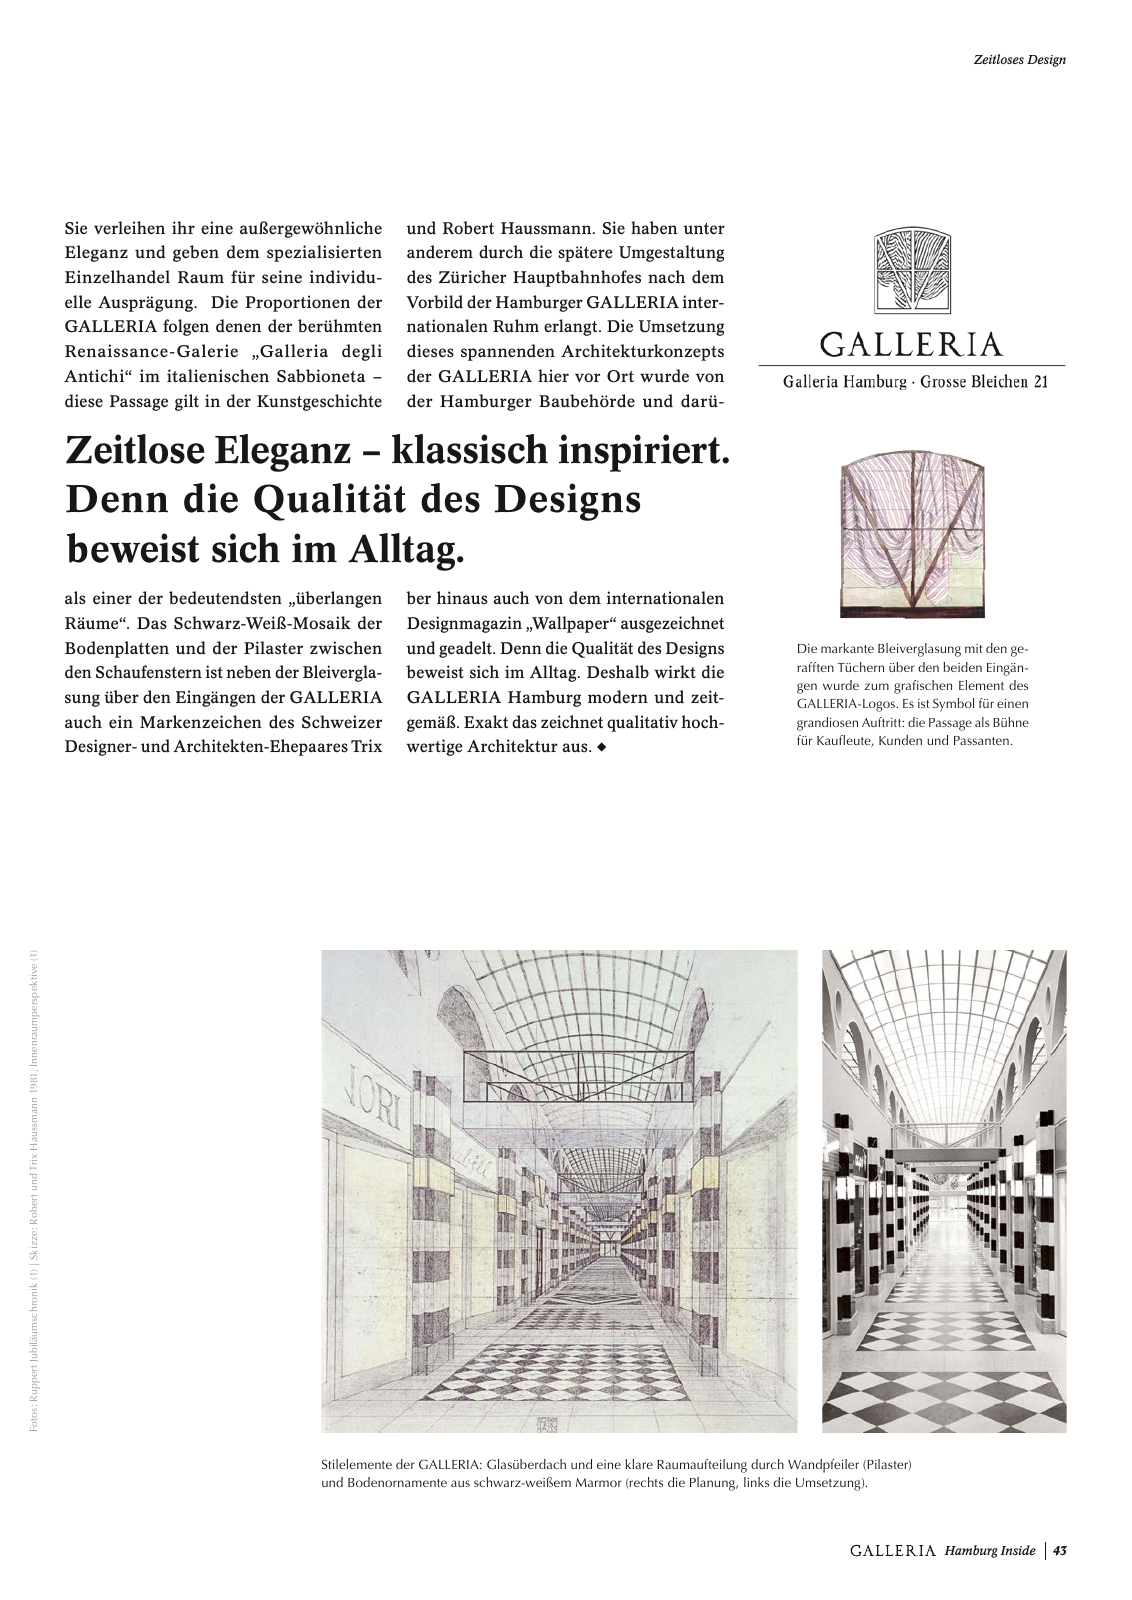 Vorschau GALLERIA Magazin Hamburg Inside 1 Seite 43